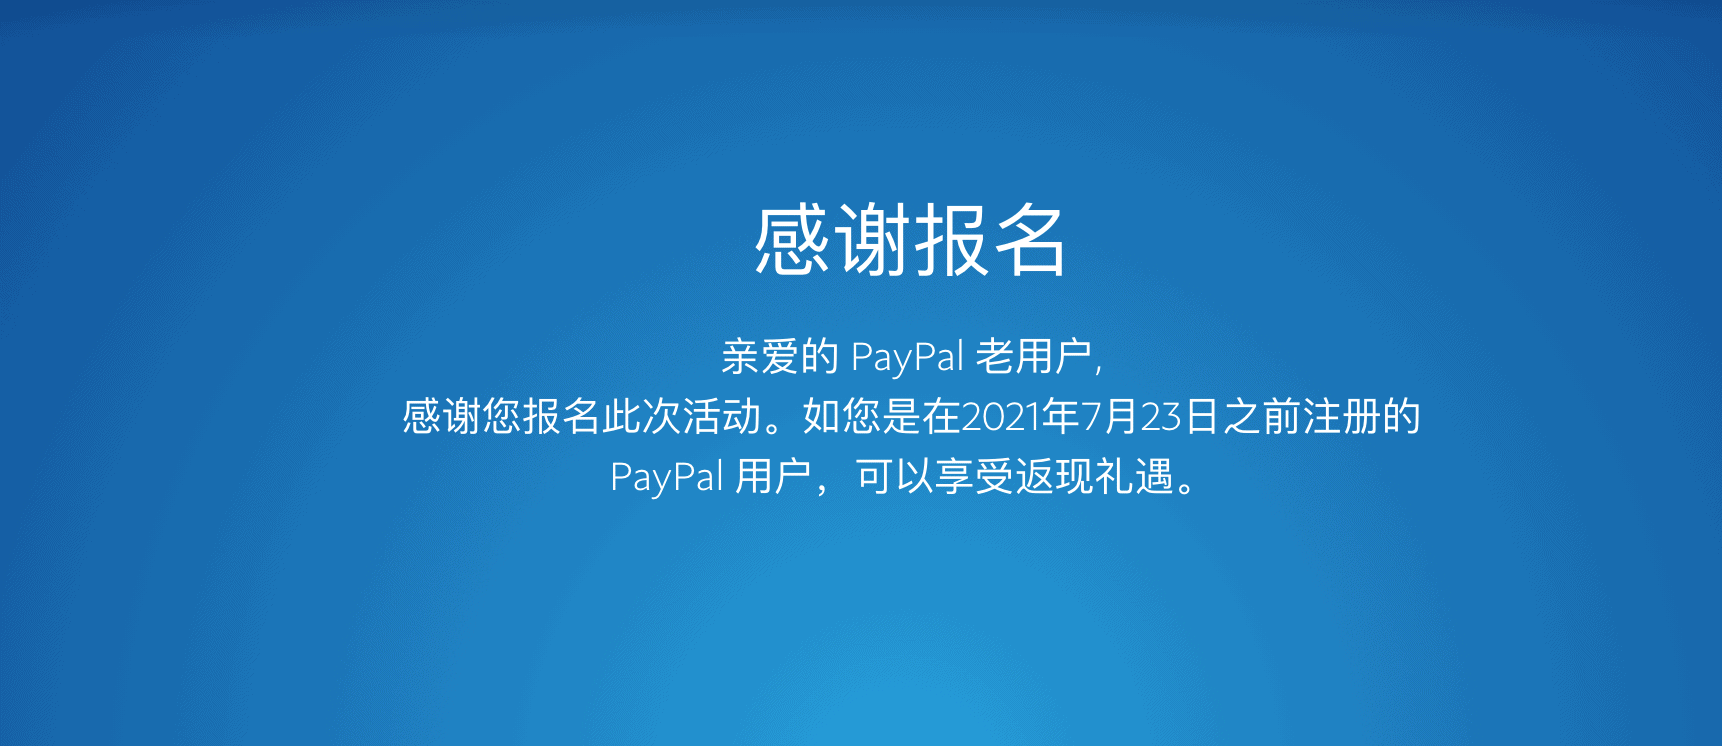 使用paypal海淘 15%美元返现活动 单笔返现最高15美元 每位PayPal用户限三笔-图片3